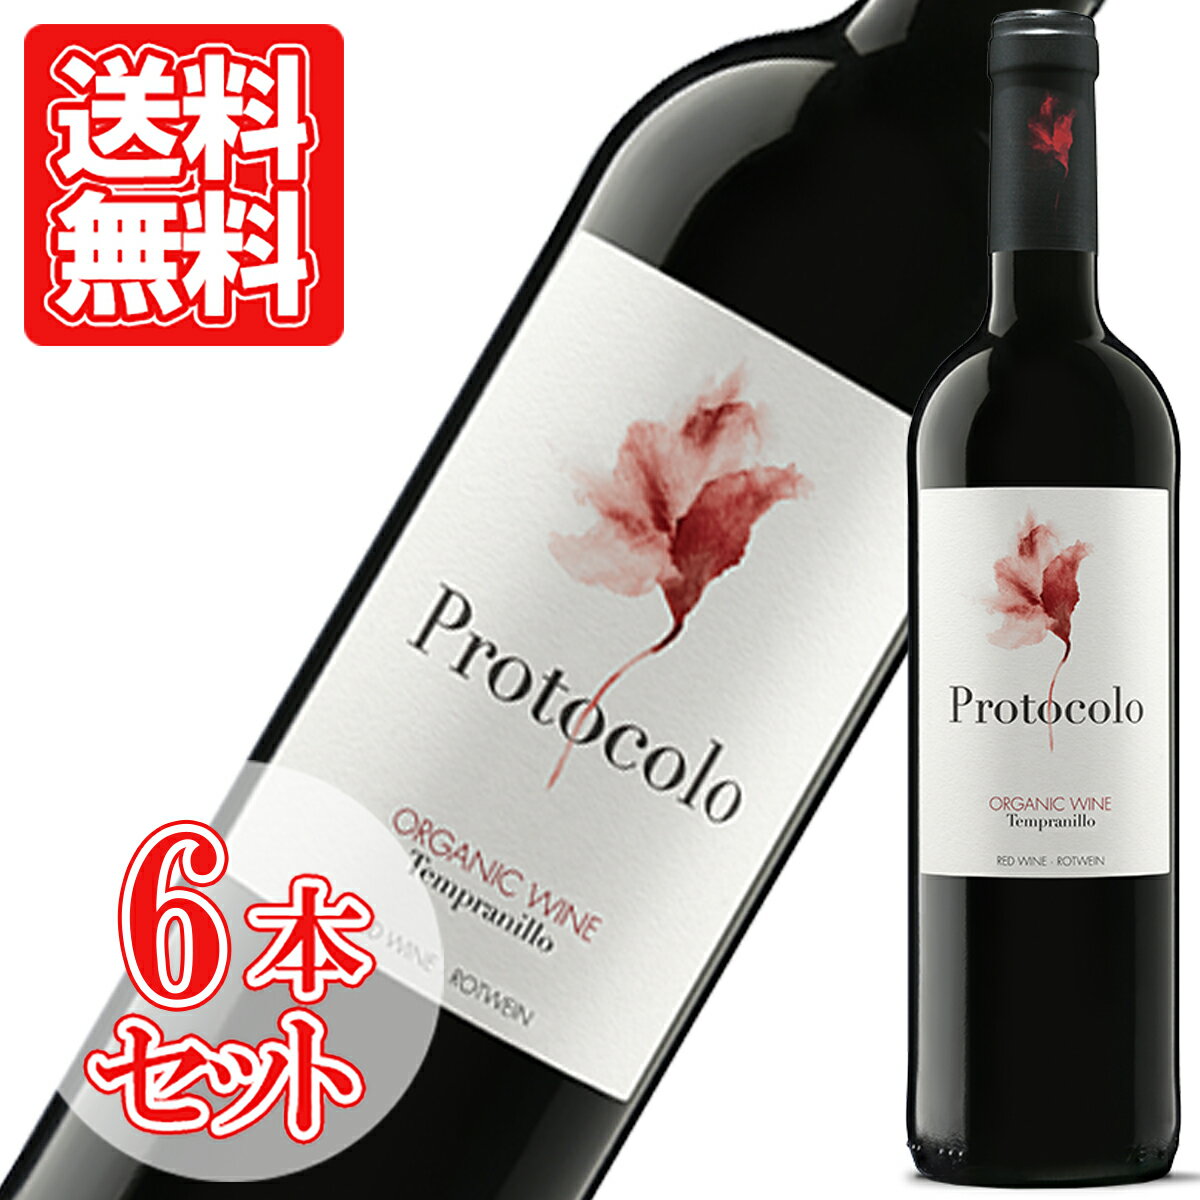 ドミニオ・デ・エグレンはワイン・アドヴォケイトにてスペイン・ワイン初の100点満点を獲得した「テルマンシア」やワイン・エンスージアストが選ぶ2007年度のベスト・ワインに選ばれた「エル・プンティード」など数々のスーパー・スパニッシュを手がけたエグレン家がテーブル・ワインに特化したボデガです。 紫がかった濃いルビー。ブルーベリーやプラムなどの芳醇な果実香に加え、胡椒などのスパイスや澄んだミネラルの香り。タンニンは熟しており滑らかな質感。完熟感のある黒色果実味とまろやかな酸味がバランス良く広がります。 生産者名：DOMINIO DE EGUREN （ドミニオ・デ・エグレン） 原産地呼称：VINO DE LA TIERRA DE CASTILLA 品種：テンプラニーリョ100％ 樹齢：30-70年 収量：32hl/ha 醸造：5日間の低温浸漬後、野生酵母のみを使いステンレスタンクにて発酵、同容器内熟成。ドミニオ・デ・エグレン ドミニオ・デ・エグレンはワイン・アドヴォケイトにてスペイン・ワイン初の100点満点を獲得した「テルマンシア」やワイン・エンスージアストが選ぶ2007年度のベスト・ワインに選ばれた「エル・プンティード」など数々のスーパー・スパニッシュを手がけたエグレン家がテーブル・ワインに特化したボデガです。 『安定した、かつ安価で上質なワインを市場に供給したい』という思いからドミニオ・デ・エグレンを設立しようと志した1980年代は、スペインの経済成長に伴うインフレで、リオハ・ワインが毎年のように約3％ずつ値上がりをしていた時期でもあり、エグレン家が拠点とするリオハではなく、スペイン中の違う地域で畑を探し回りました。設立当初のポリシーを守り、1996年から価格は動いておりません。 現在ドミニオ・デ・エグレンにて使われる葡萄は栽培方法や収穫期などエグレン・スタイルを守ってくれる契約農家からのものを使用。カスティーリャ・ラ・マンチャ州のマンチュエラより収穫されます。畑は標高700?900mの高所にあり、年間降水量は400ミリ程と非常に乾燥しており、病気の心配が無い為、農薬はもちろん銅や硫黄の使用もしておらず、認証こそありませんが有機栽培と呼べる栽培を行っております。また、エグレン・ファミリーが造るワインが全てそうであるようにドミニオ・デ・エグレンに関しても収穫は全て手摘みにて行っております。